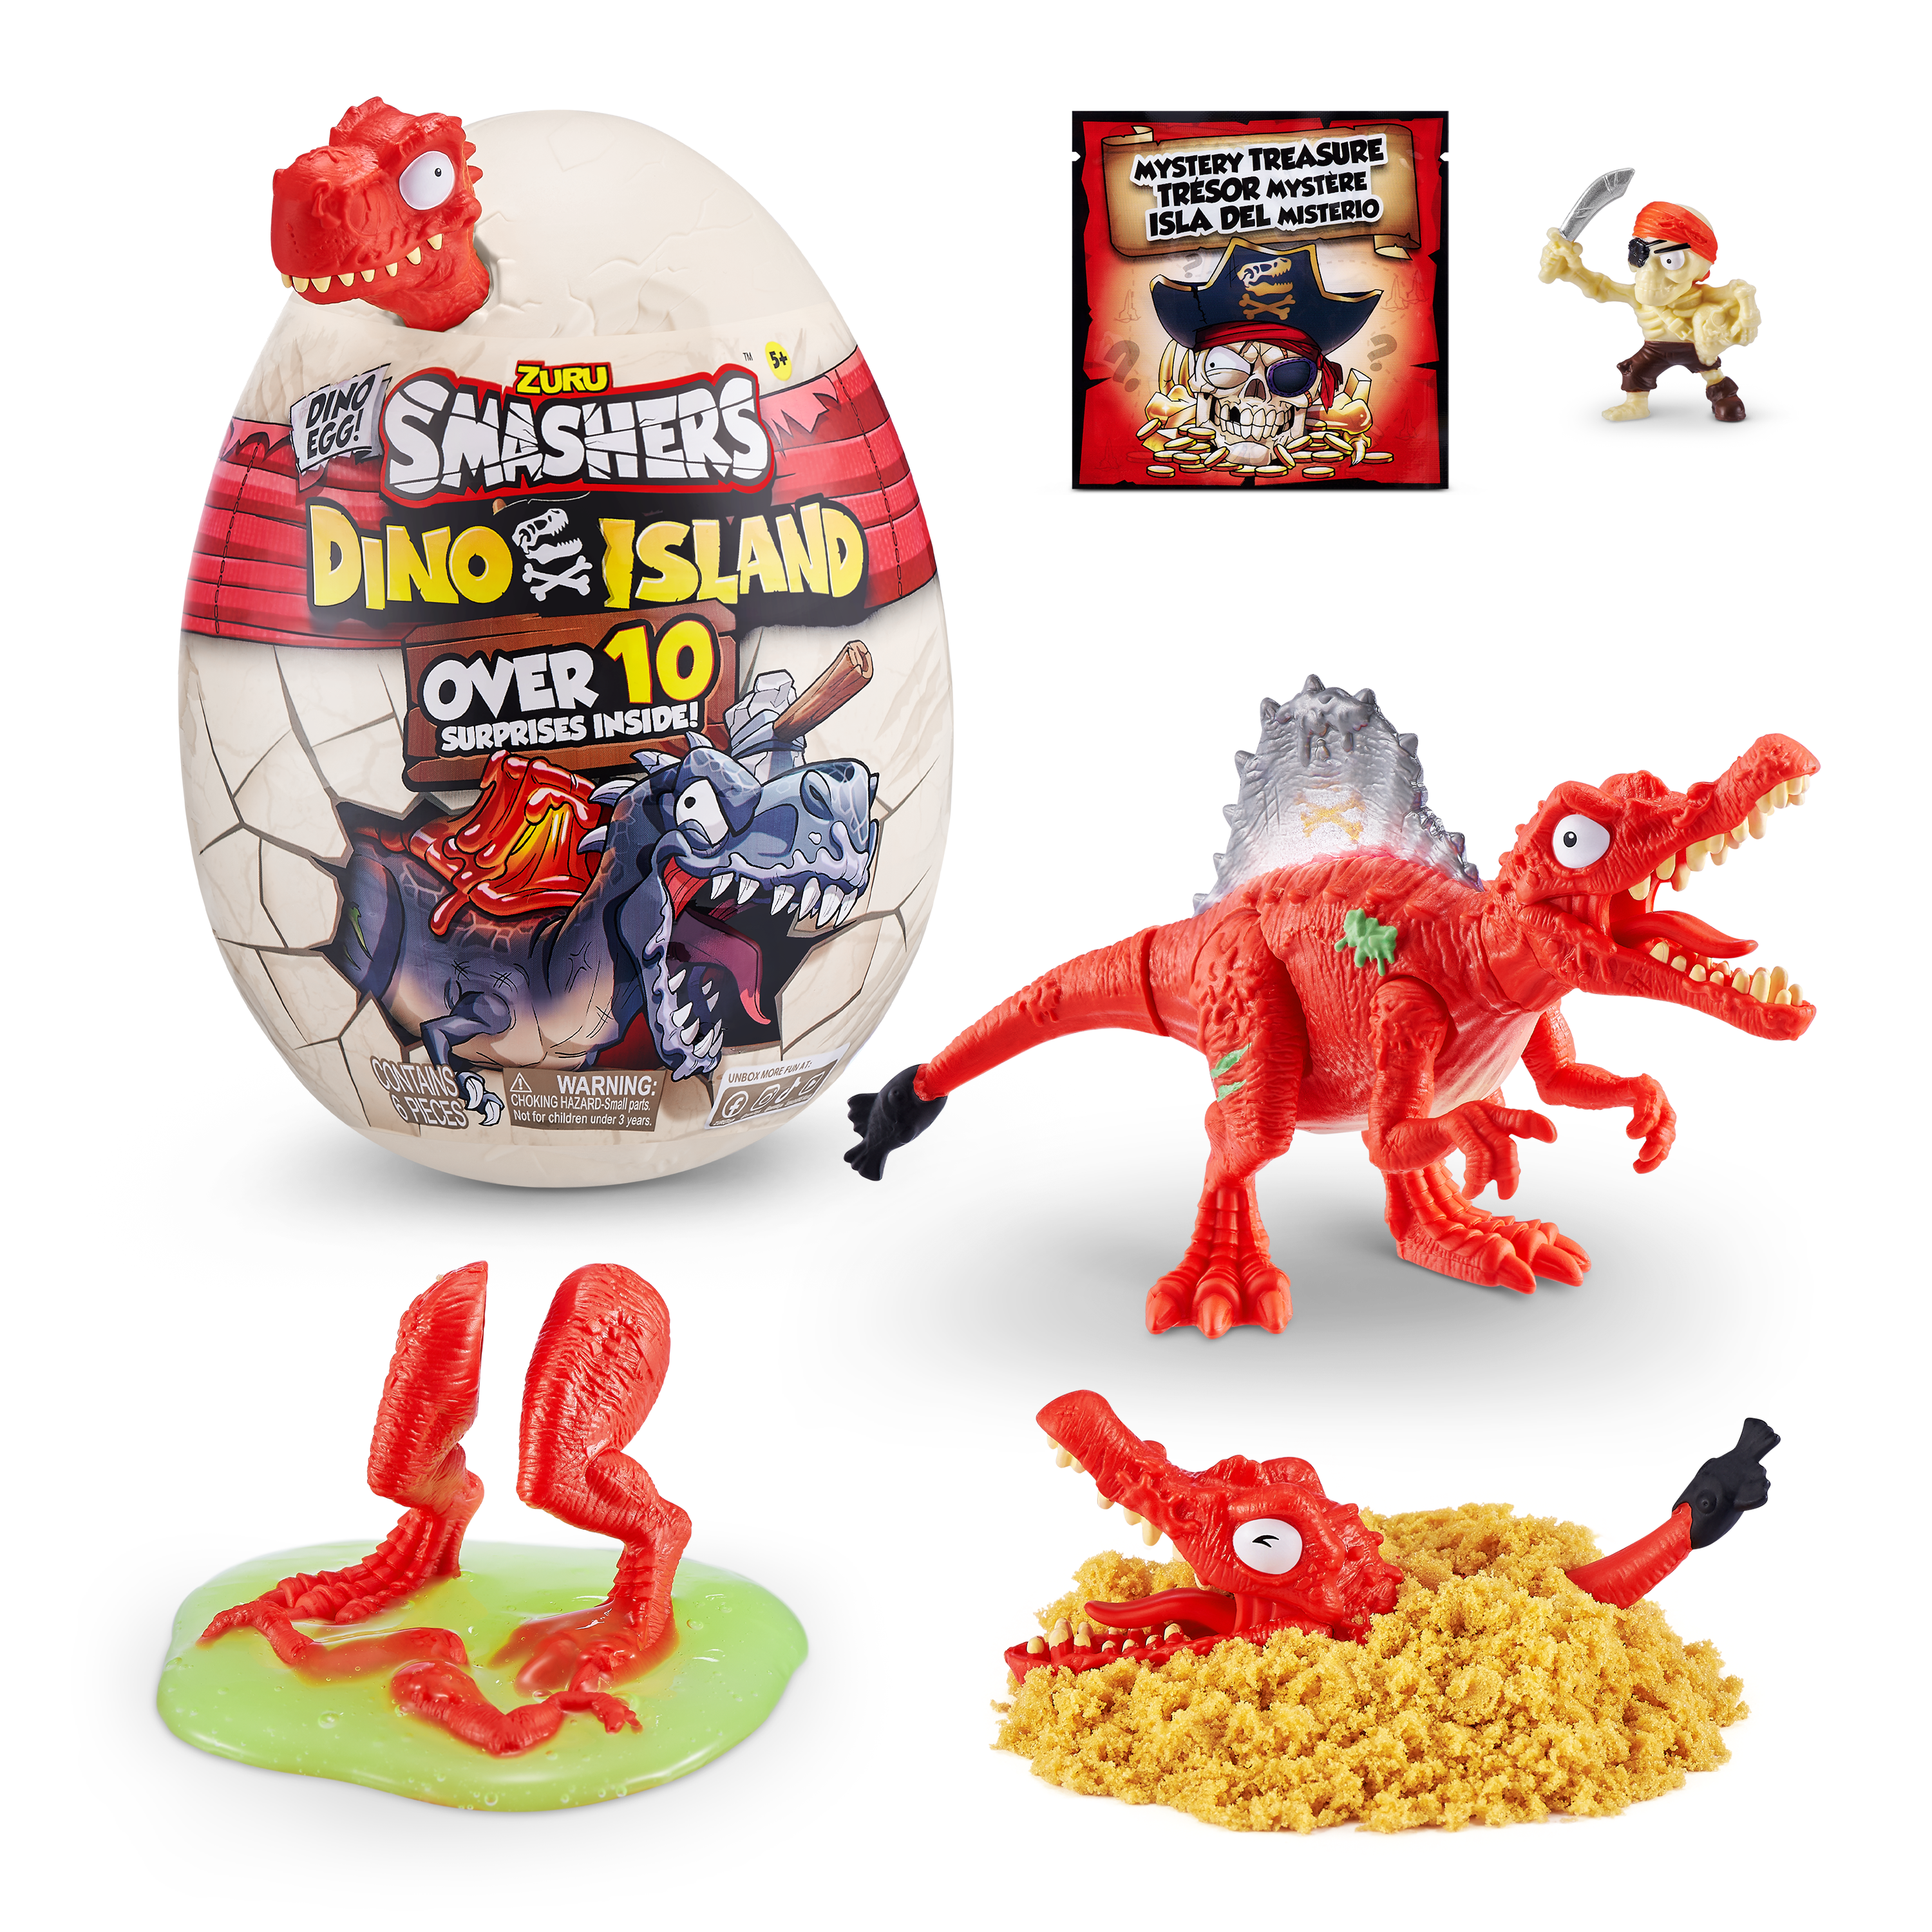 Игровой набор  Smashers Dino Island сюрприз в яйце малое яйцо, 10 сюрпризов Вариант 3— магазин-салютов.рус